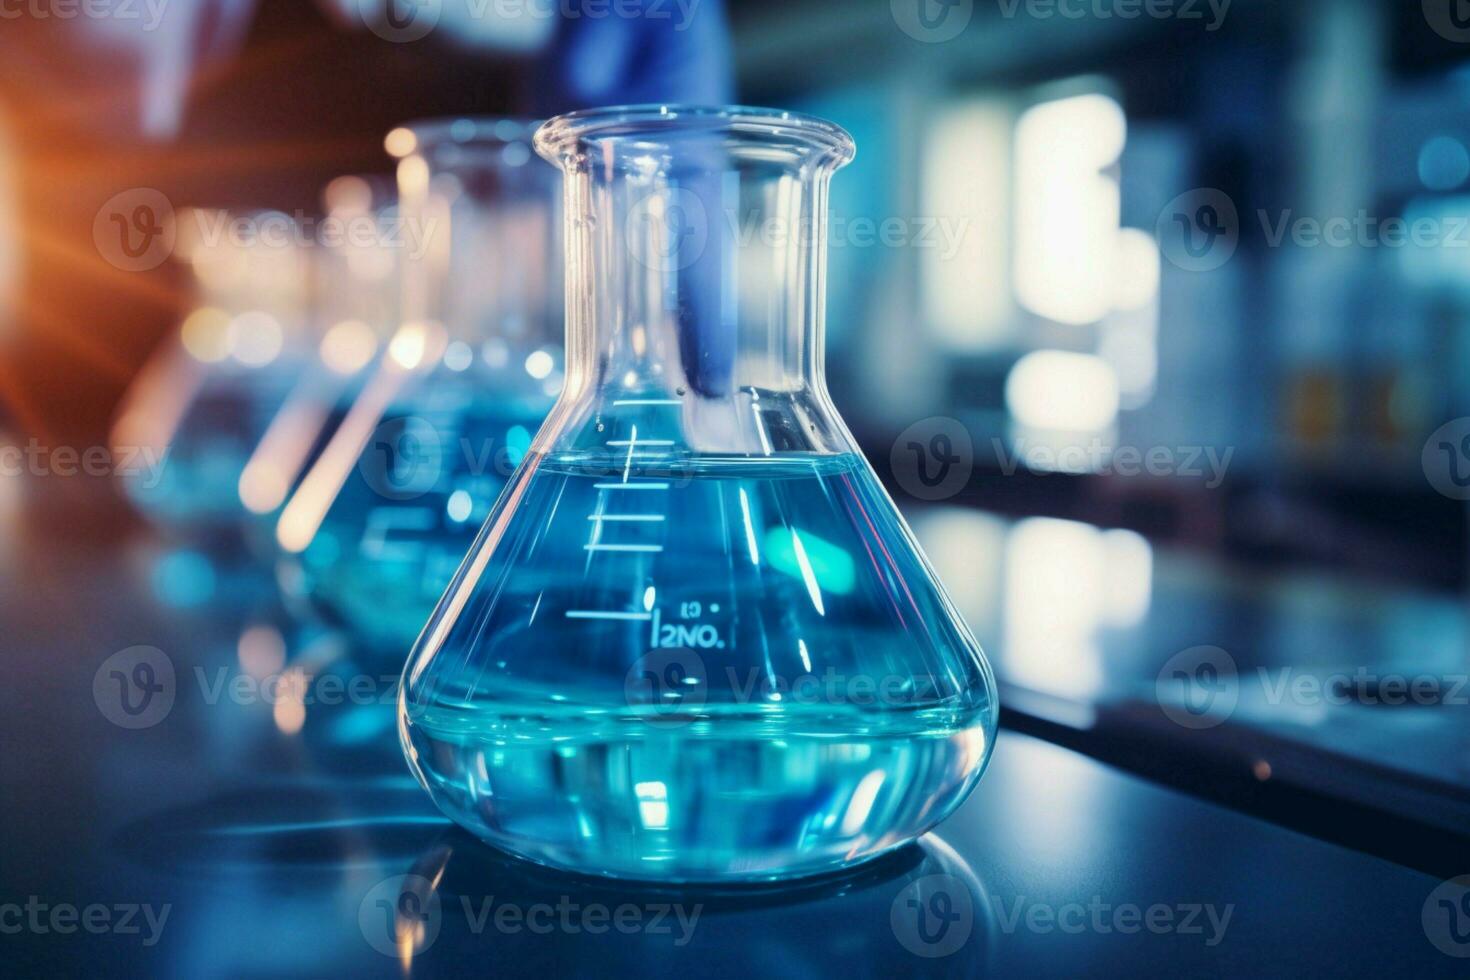 SiloPharma: verreries de laboratoire pour la pharmacie, la beauté, le  parfums et la chimie.